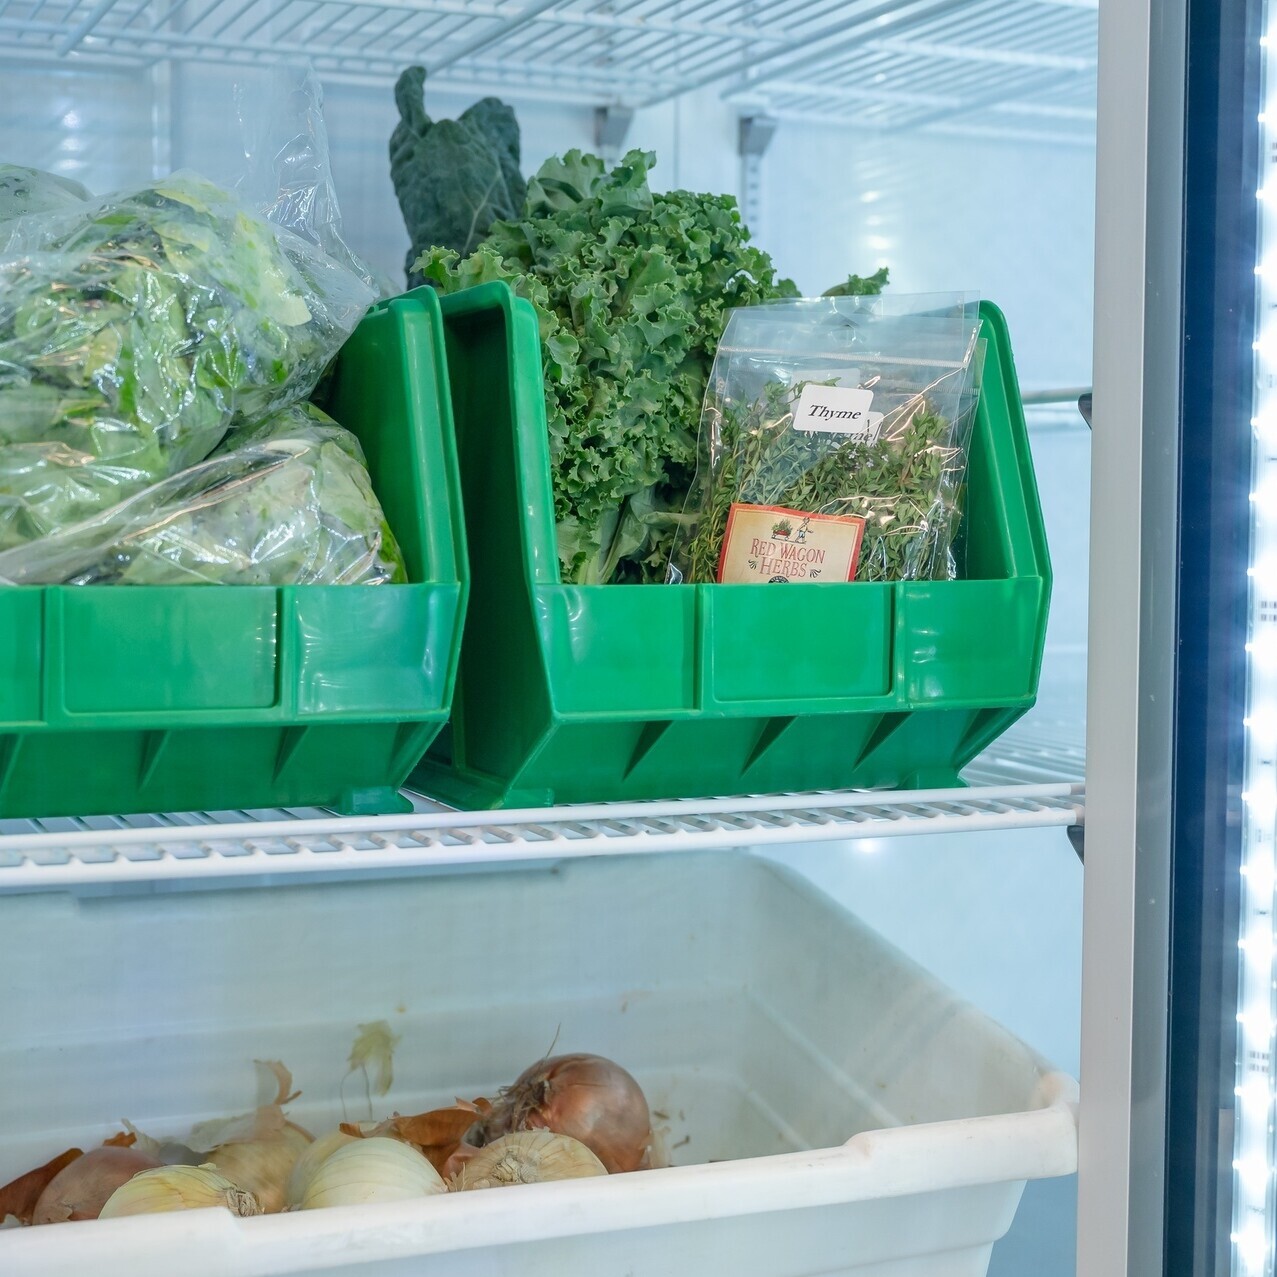 Vegetables in bins in a clear door fridge